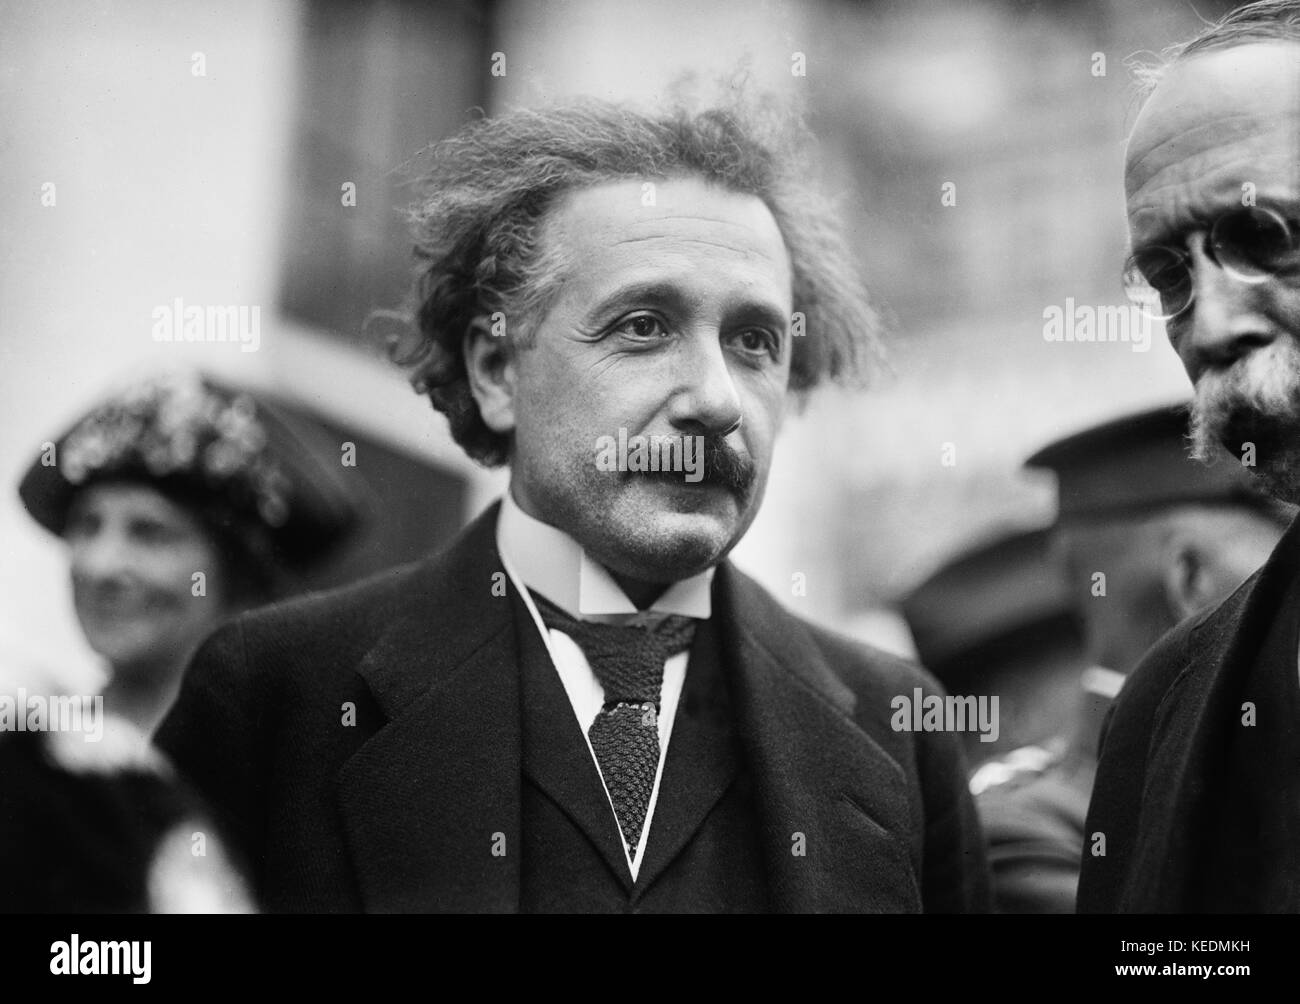 Albert Einstein,Portrait While Visiting White House,Washington DC,USA,Harris & Ewing,1921 Stock Photo